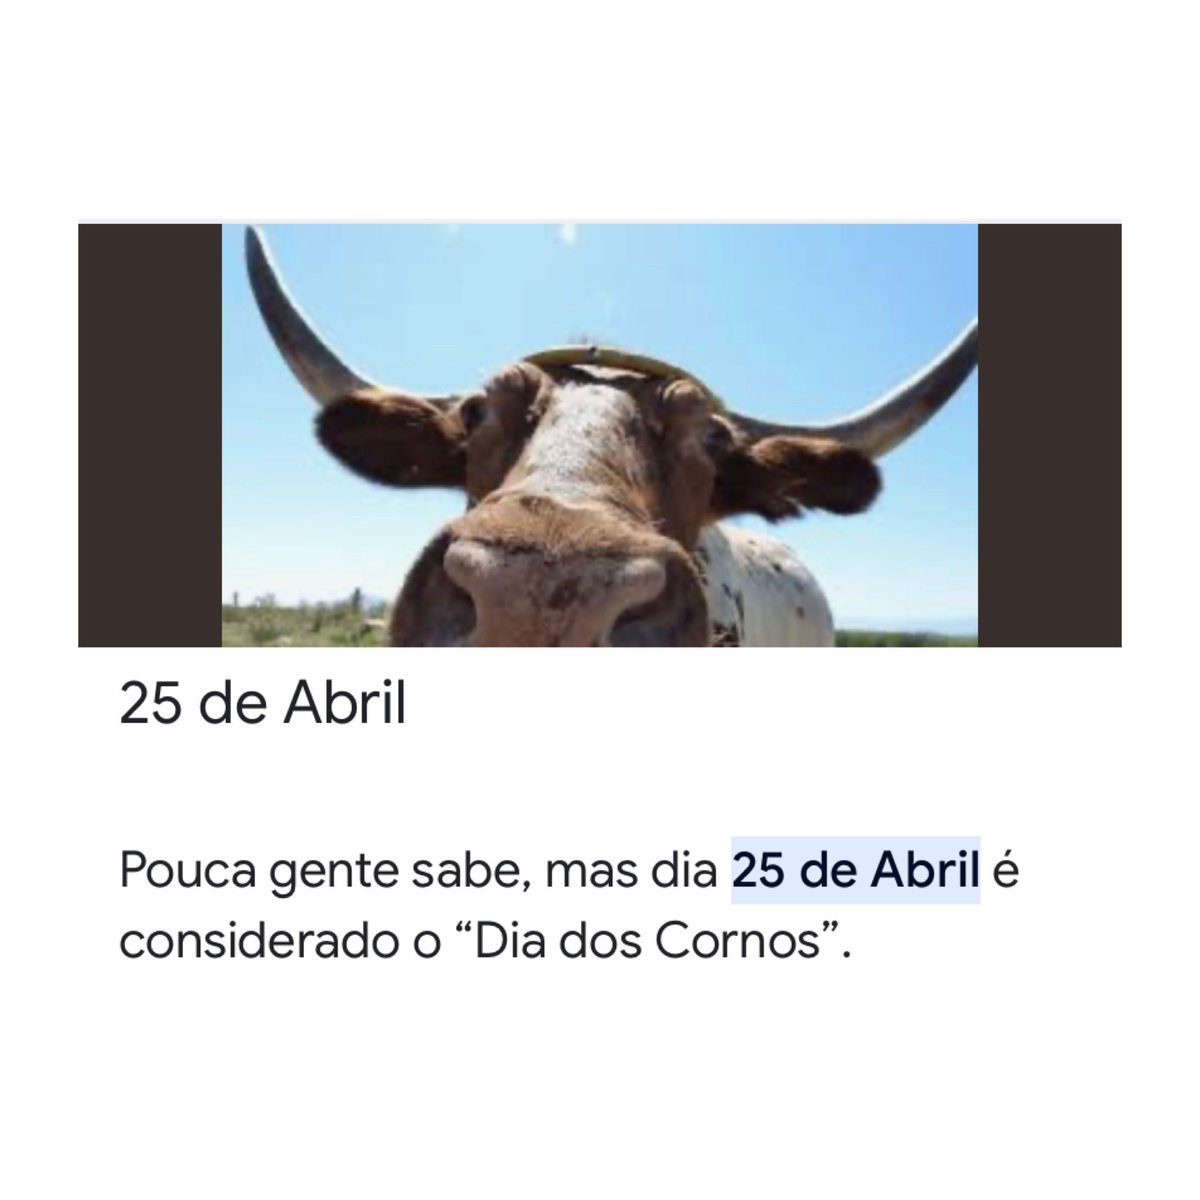 🚨HOJE: 25 de abril é considerado o “Dia dos Cornos”. Marque alguém que precisa celebrar esta data!